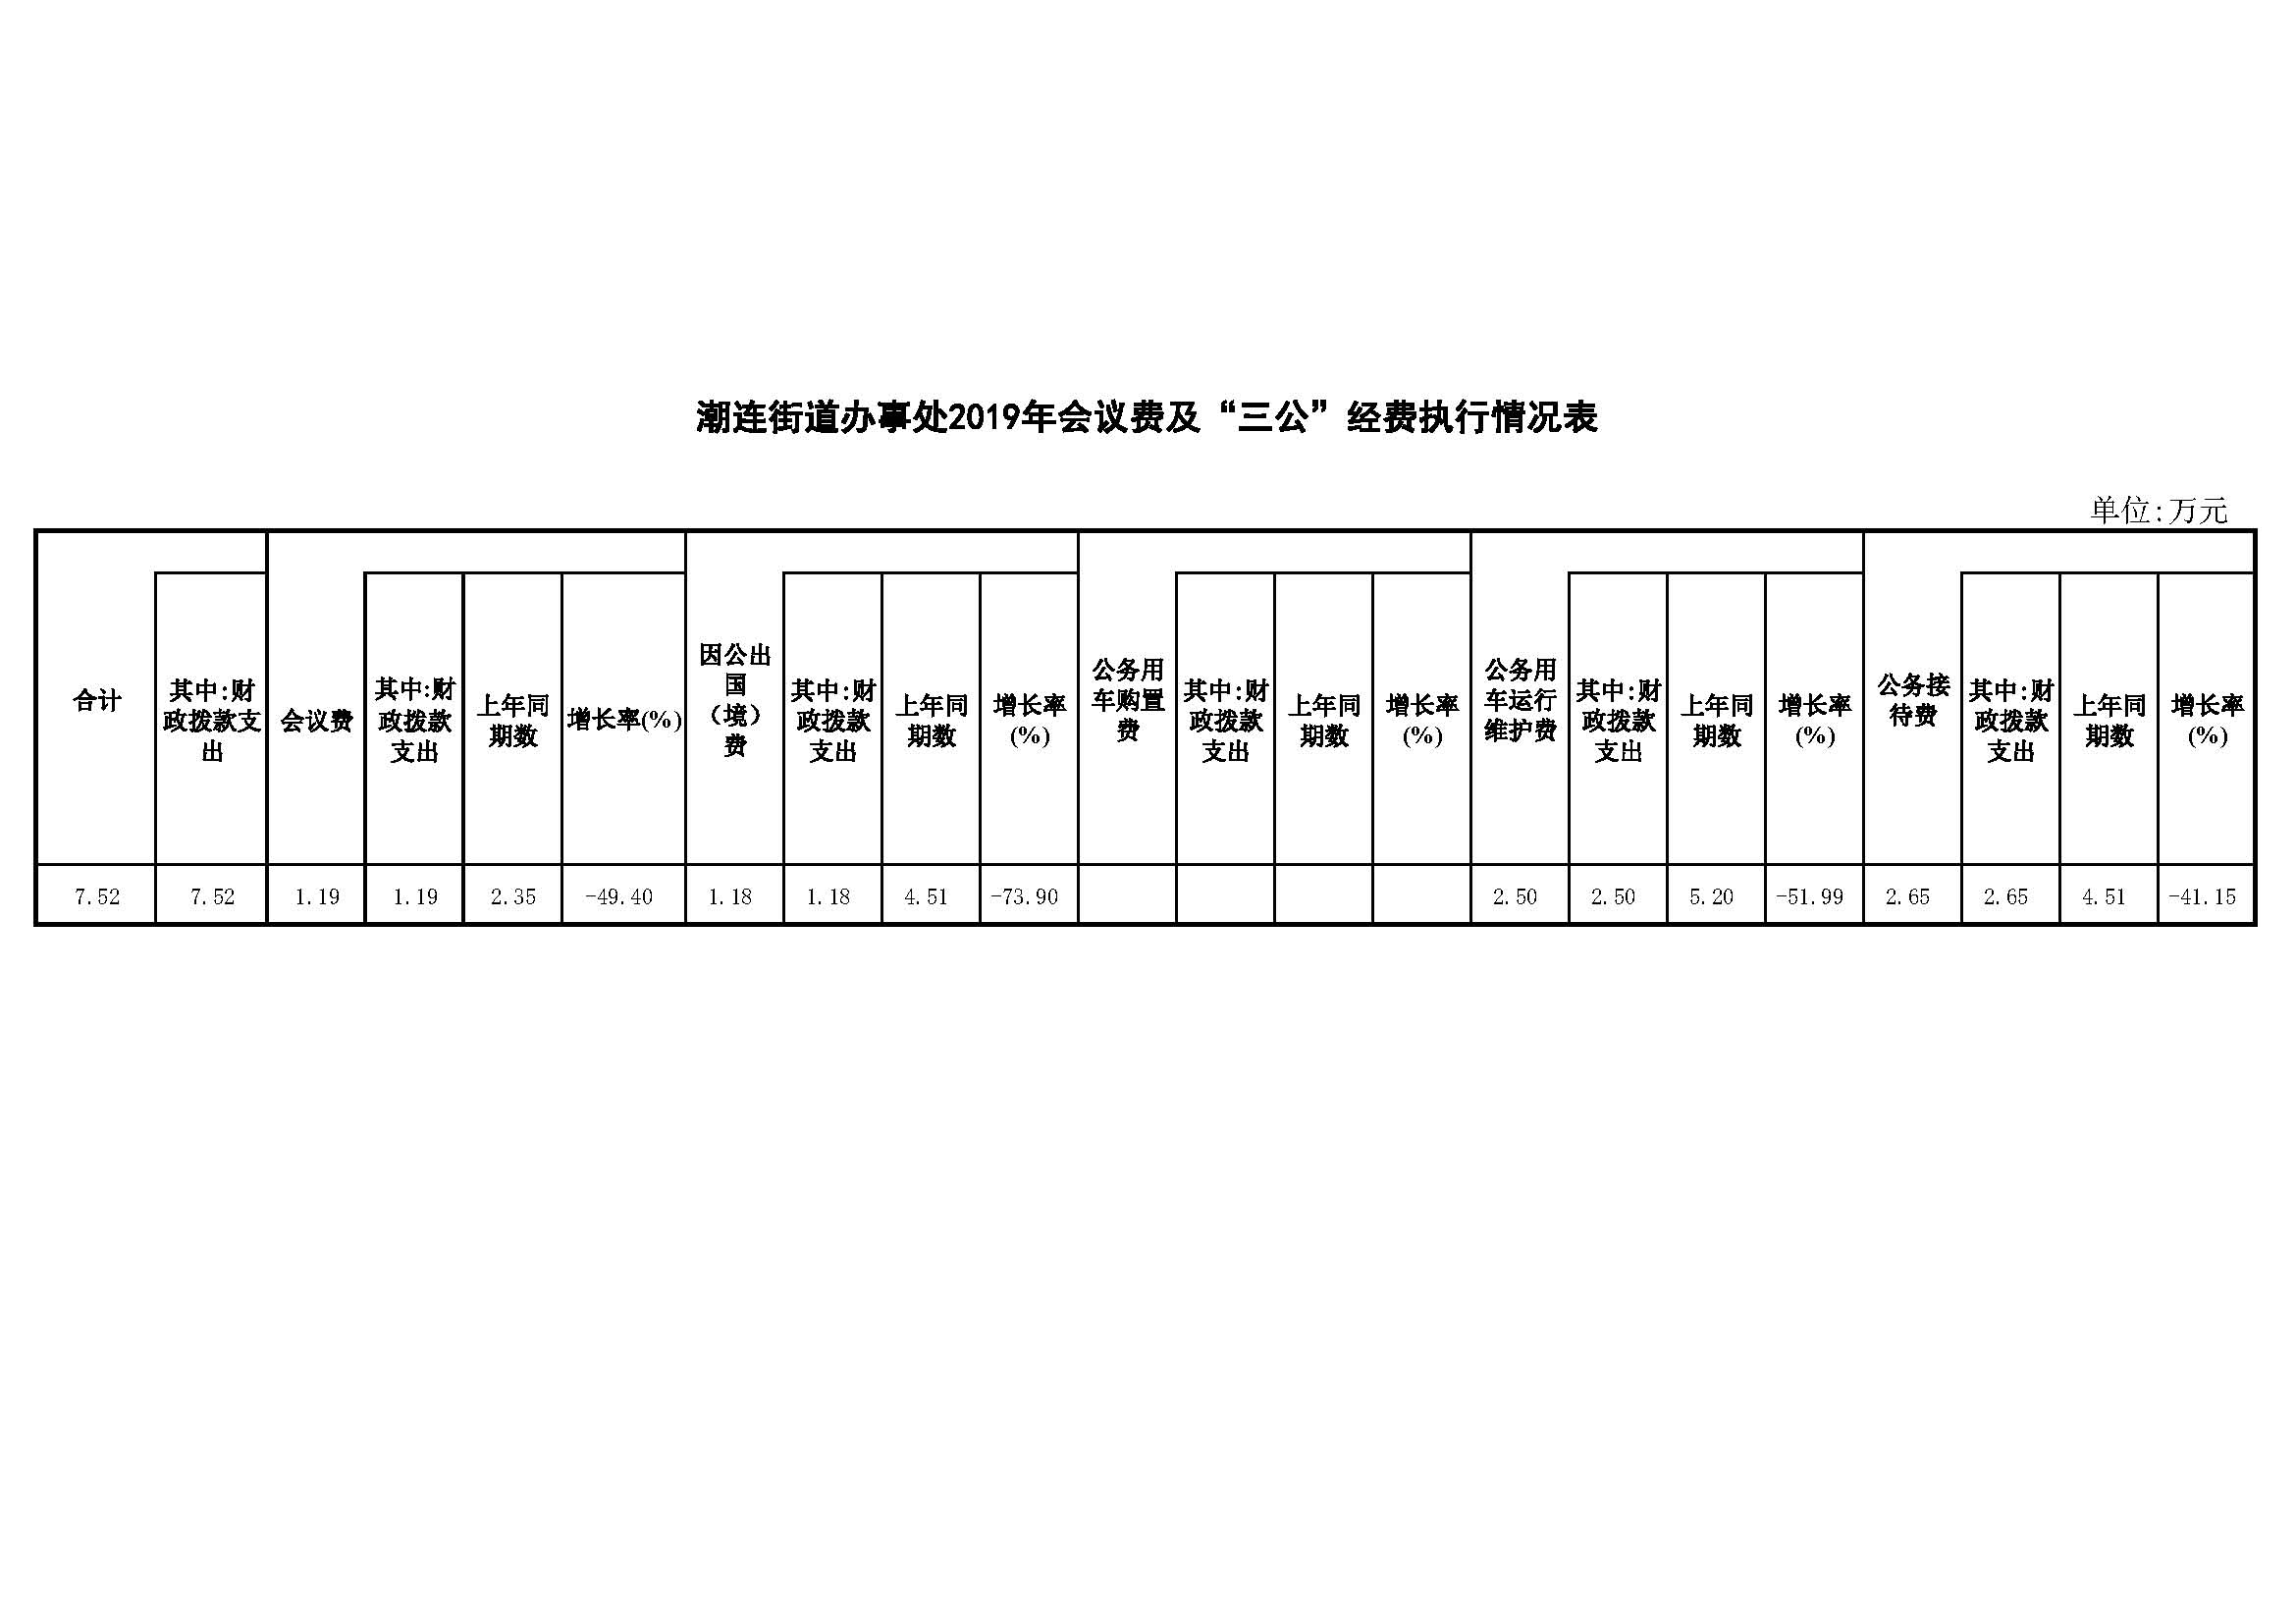 潮连街道办事处2019年会议费及“三公”经费执行情况表.jpg